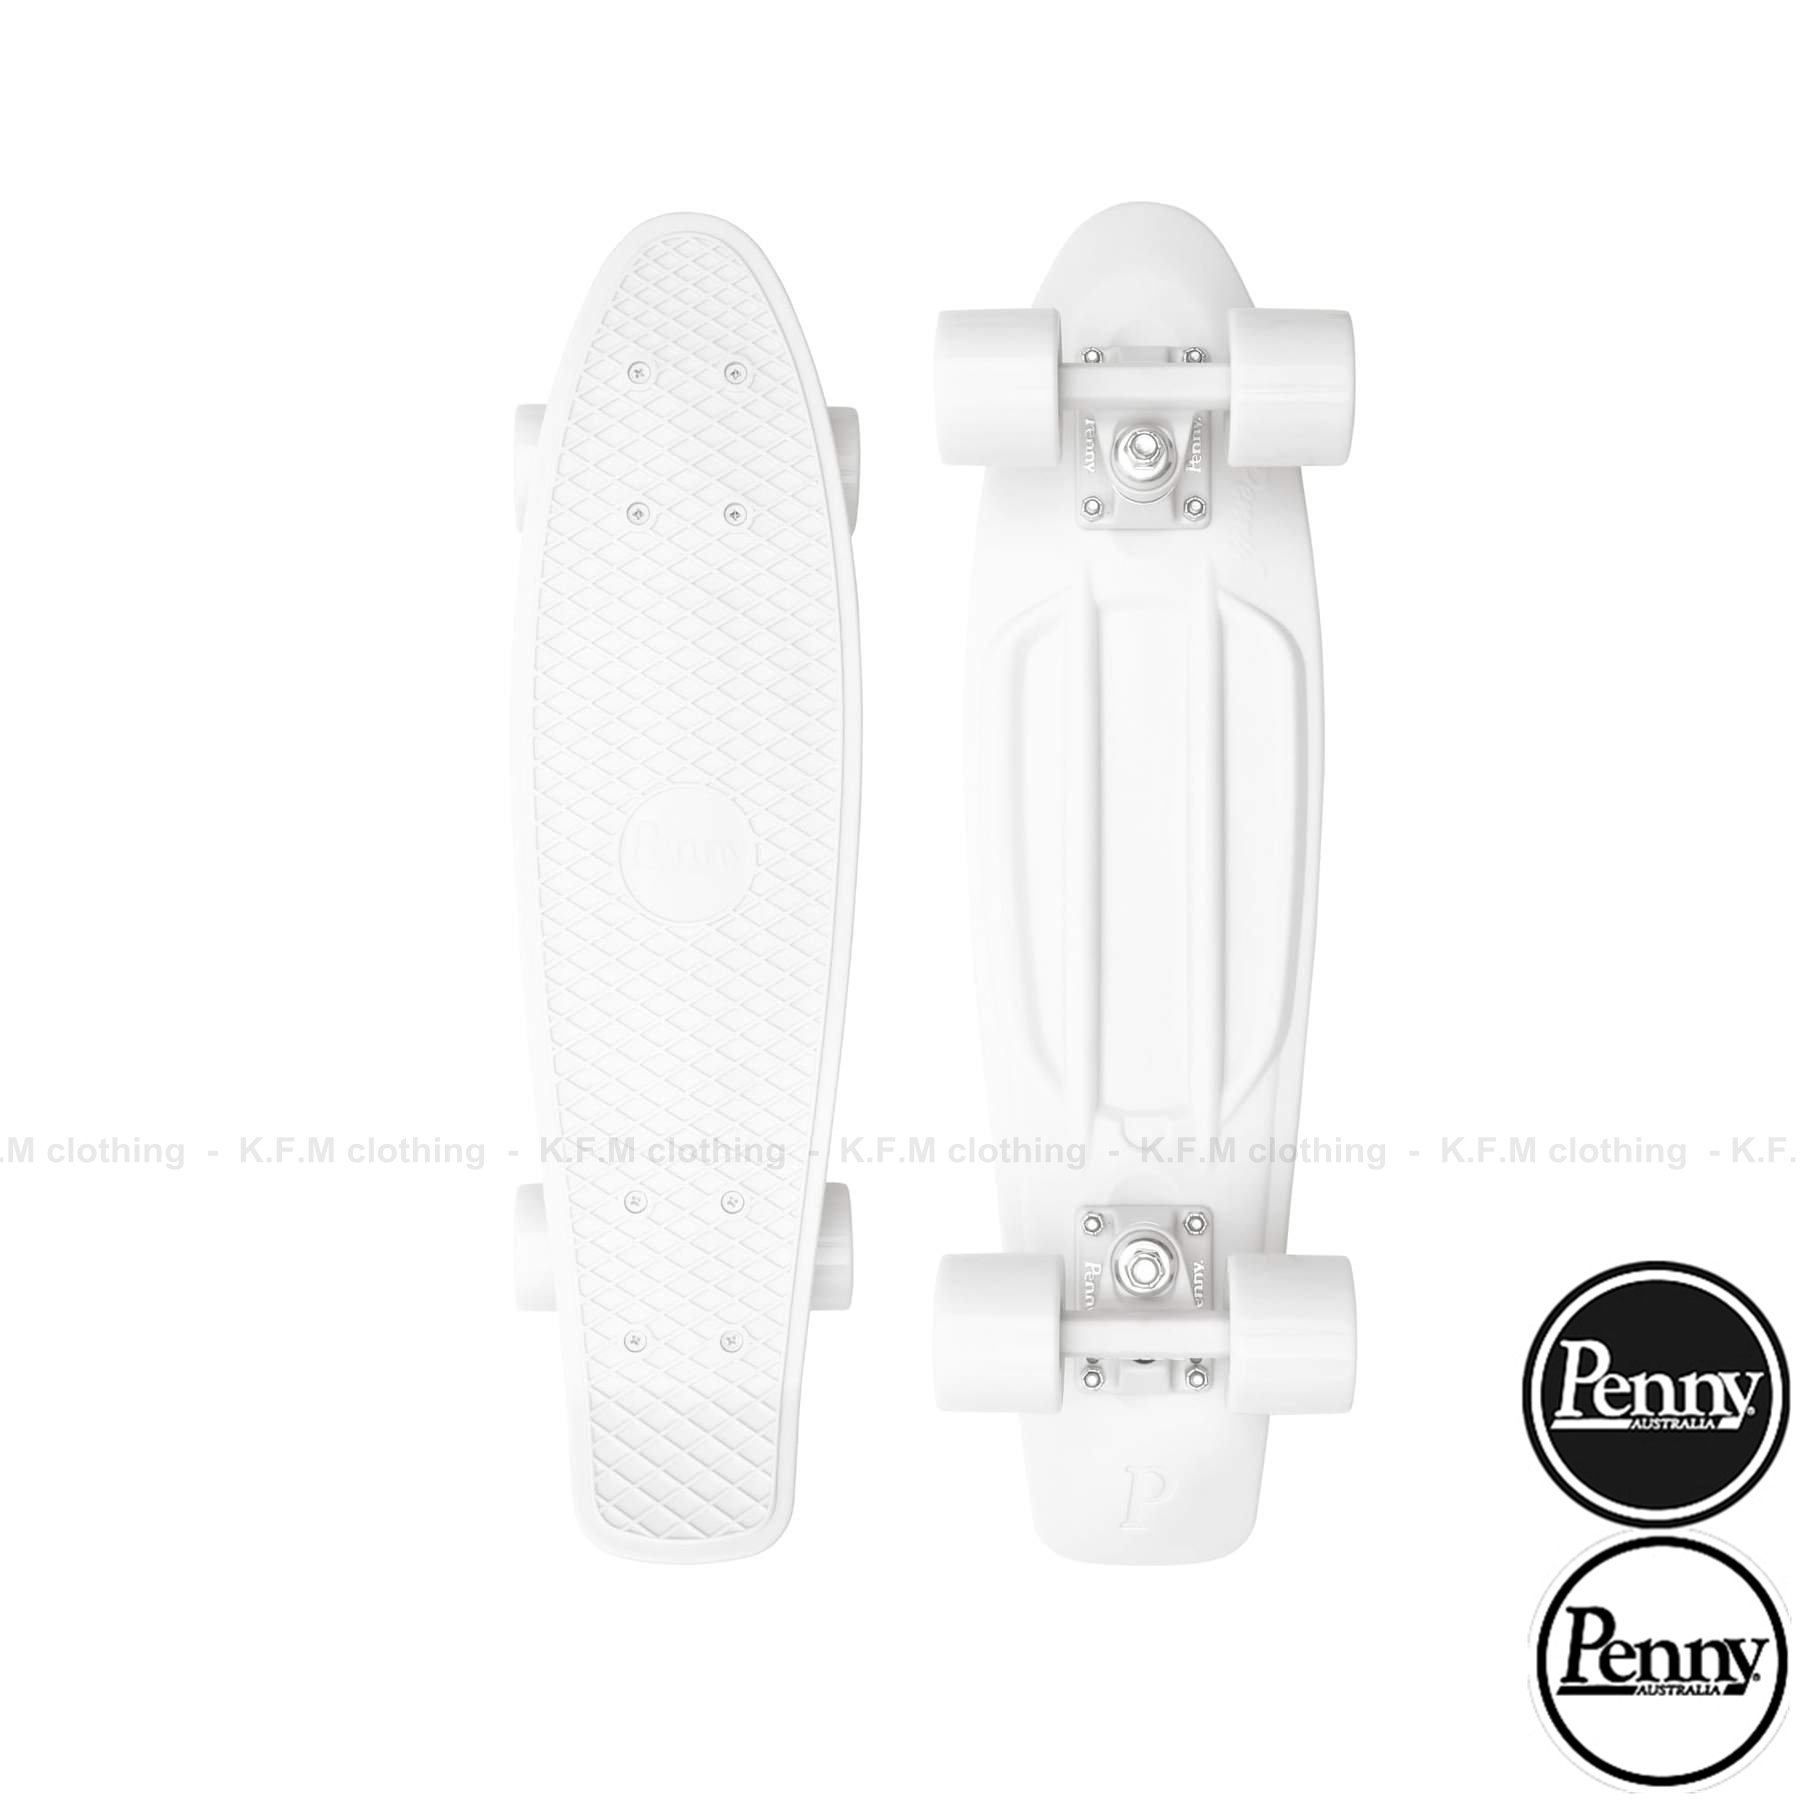 【 K.F.M 】Penny Skateboards 2021 WHITE 膠板 交通板 滑板 22吋 全白色